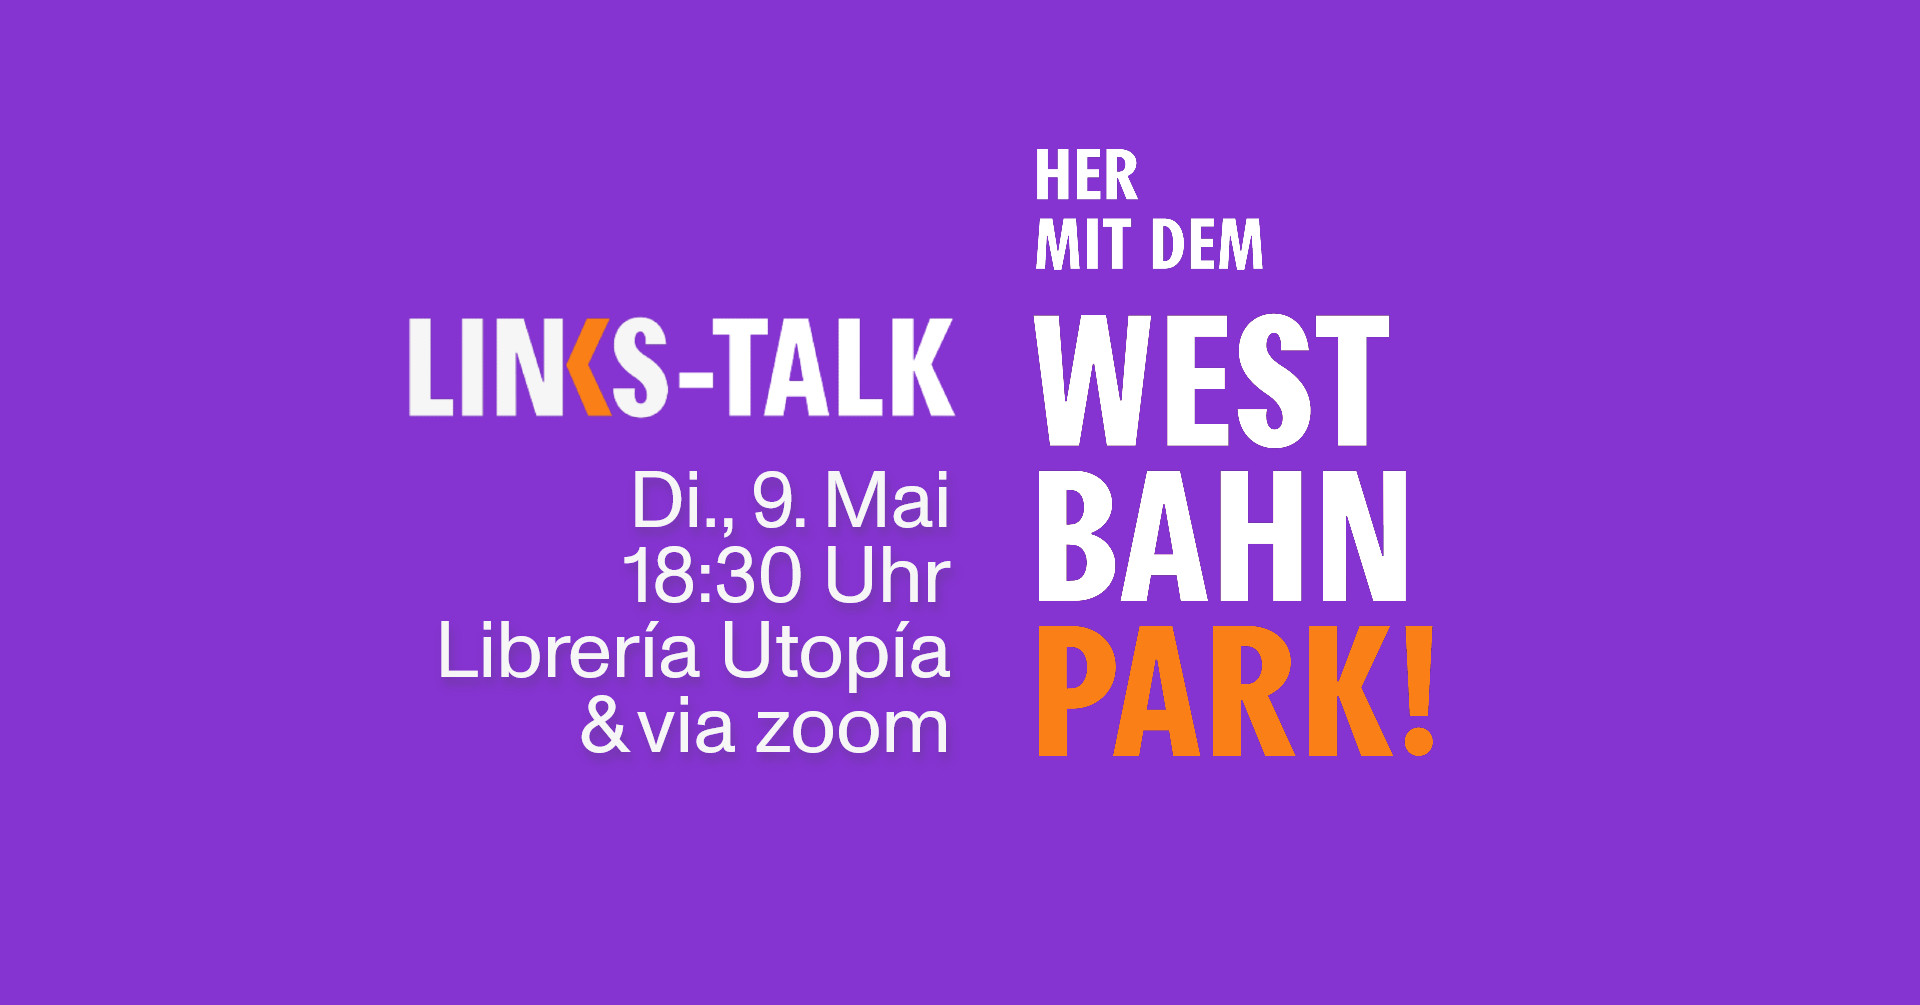 LINKS-Talk: Her mit dem Westbahn-Park!